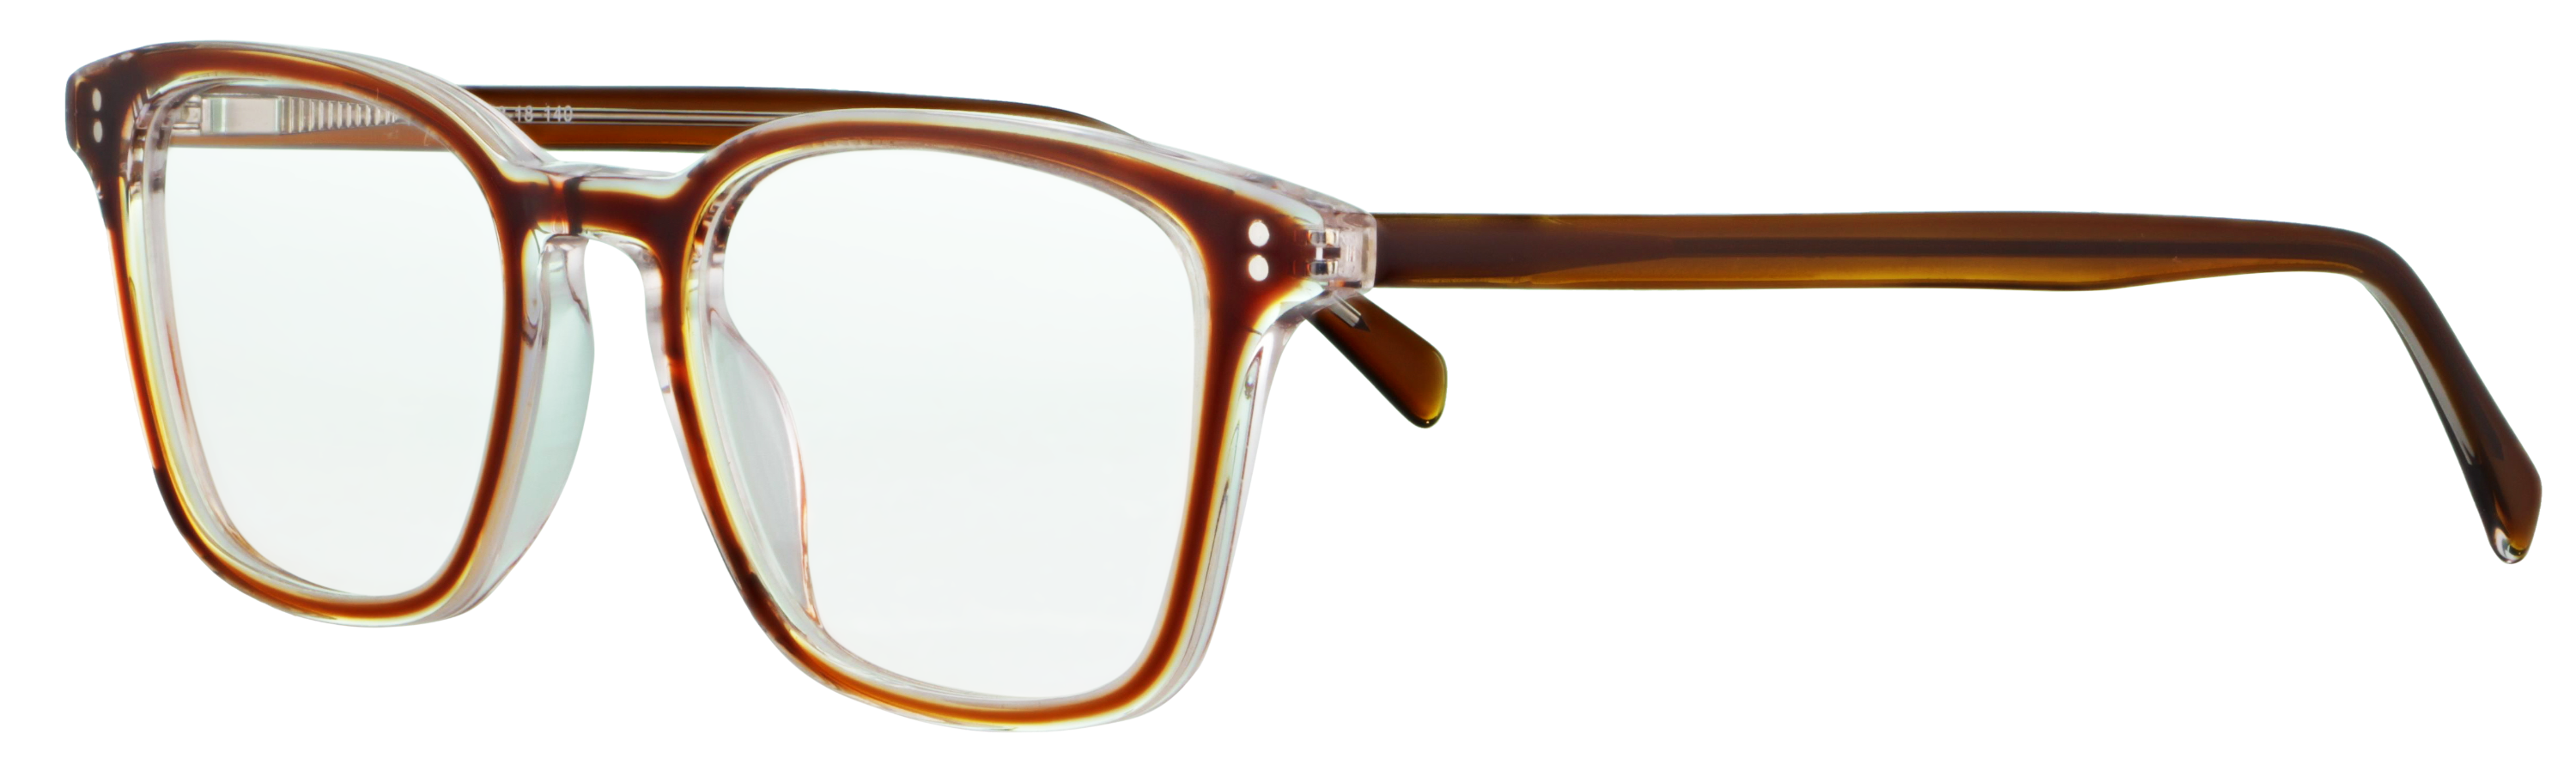 Das Bild zeigt die Korrektionsbrille 140551 von der Marke Abele Optik in braun transparent.